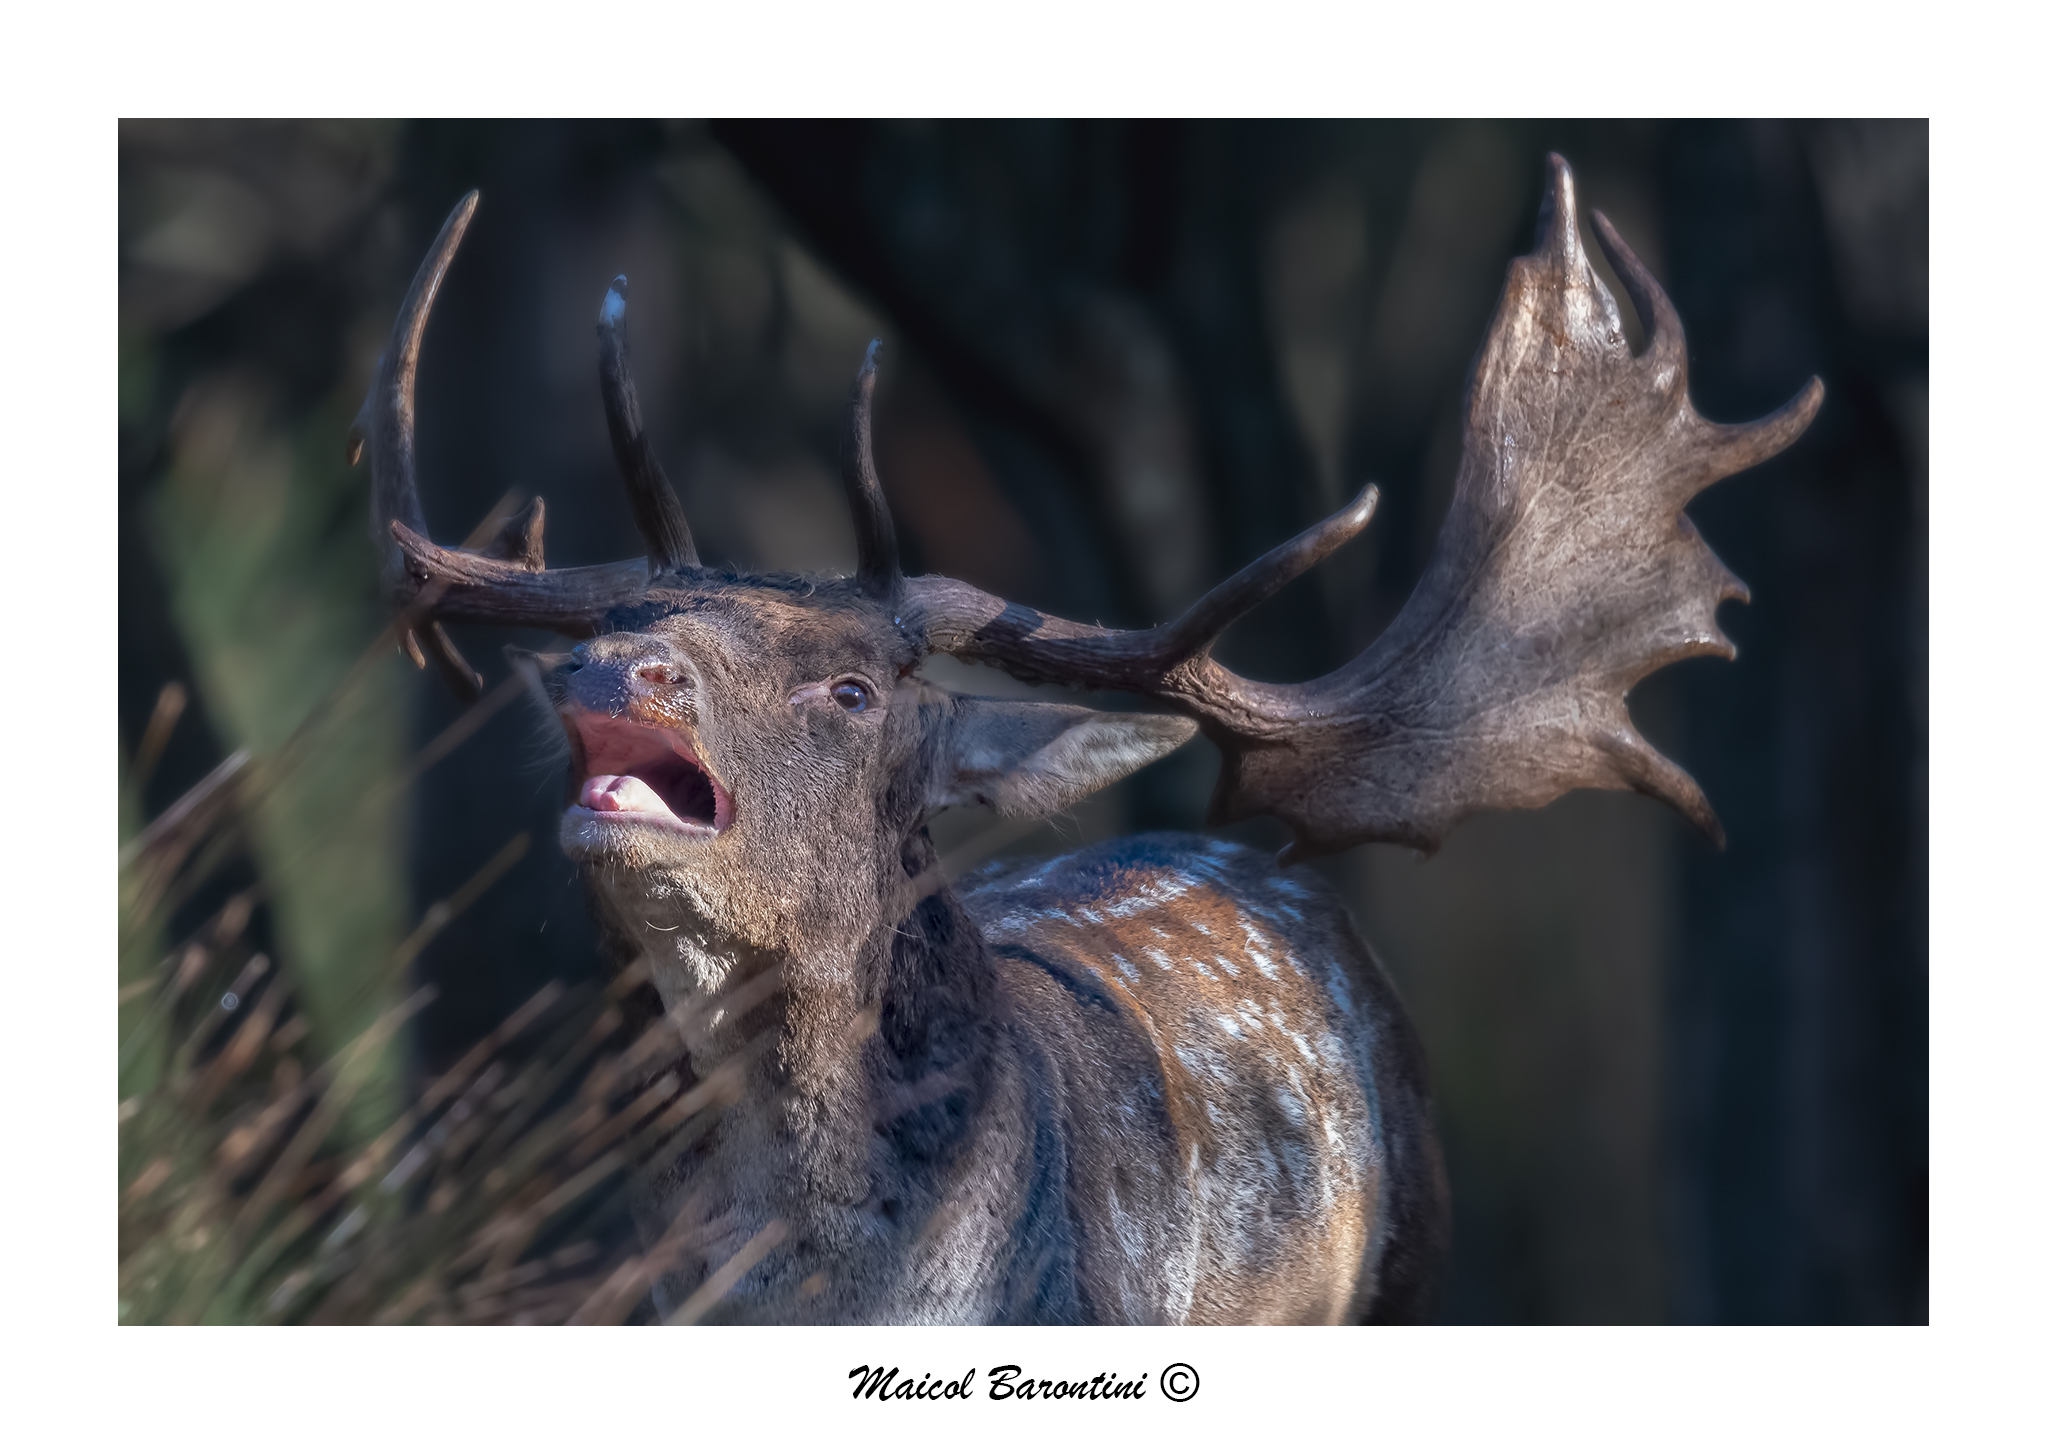 The roar of the Deer...